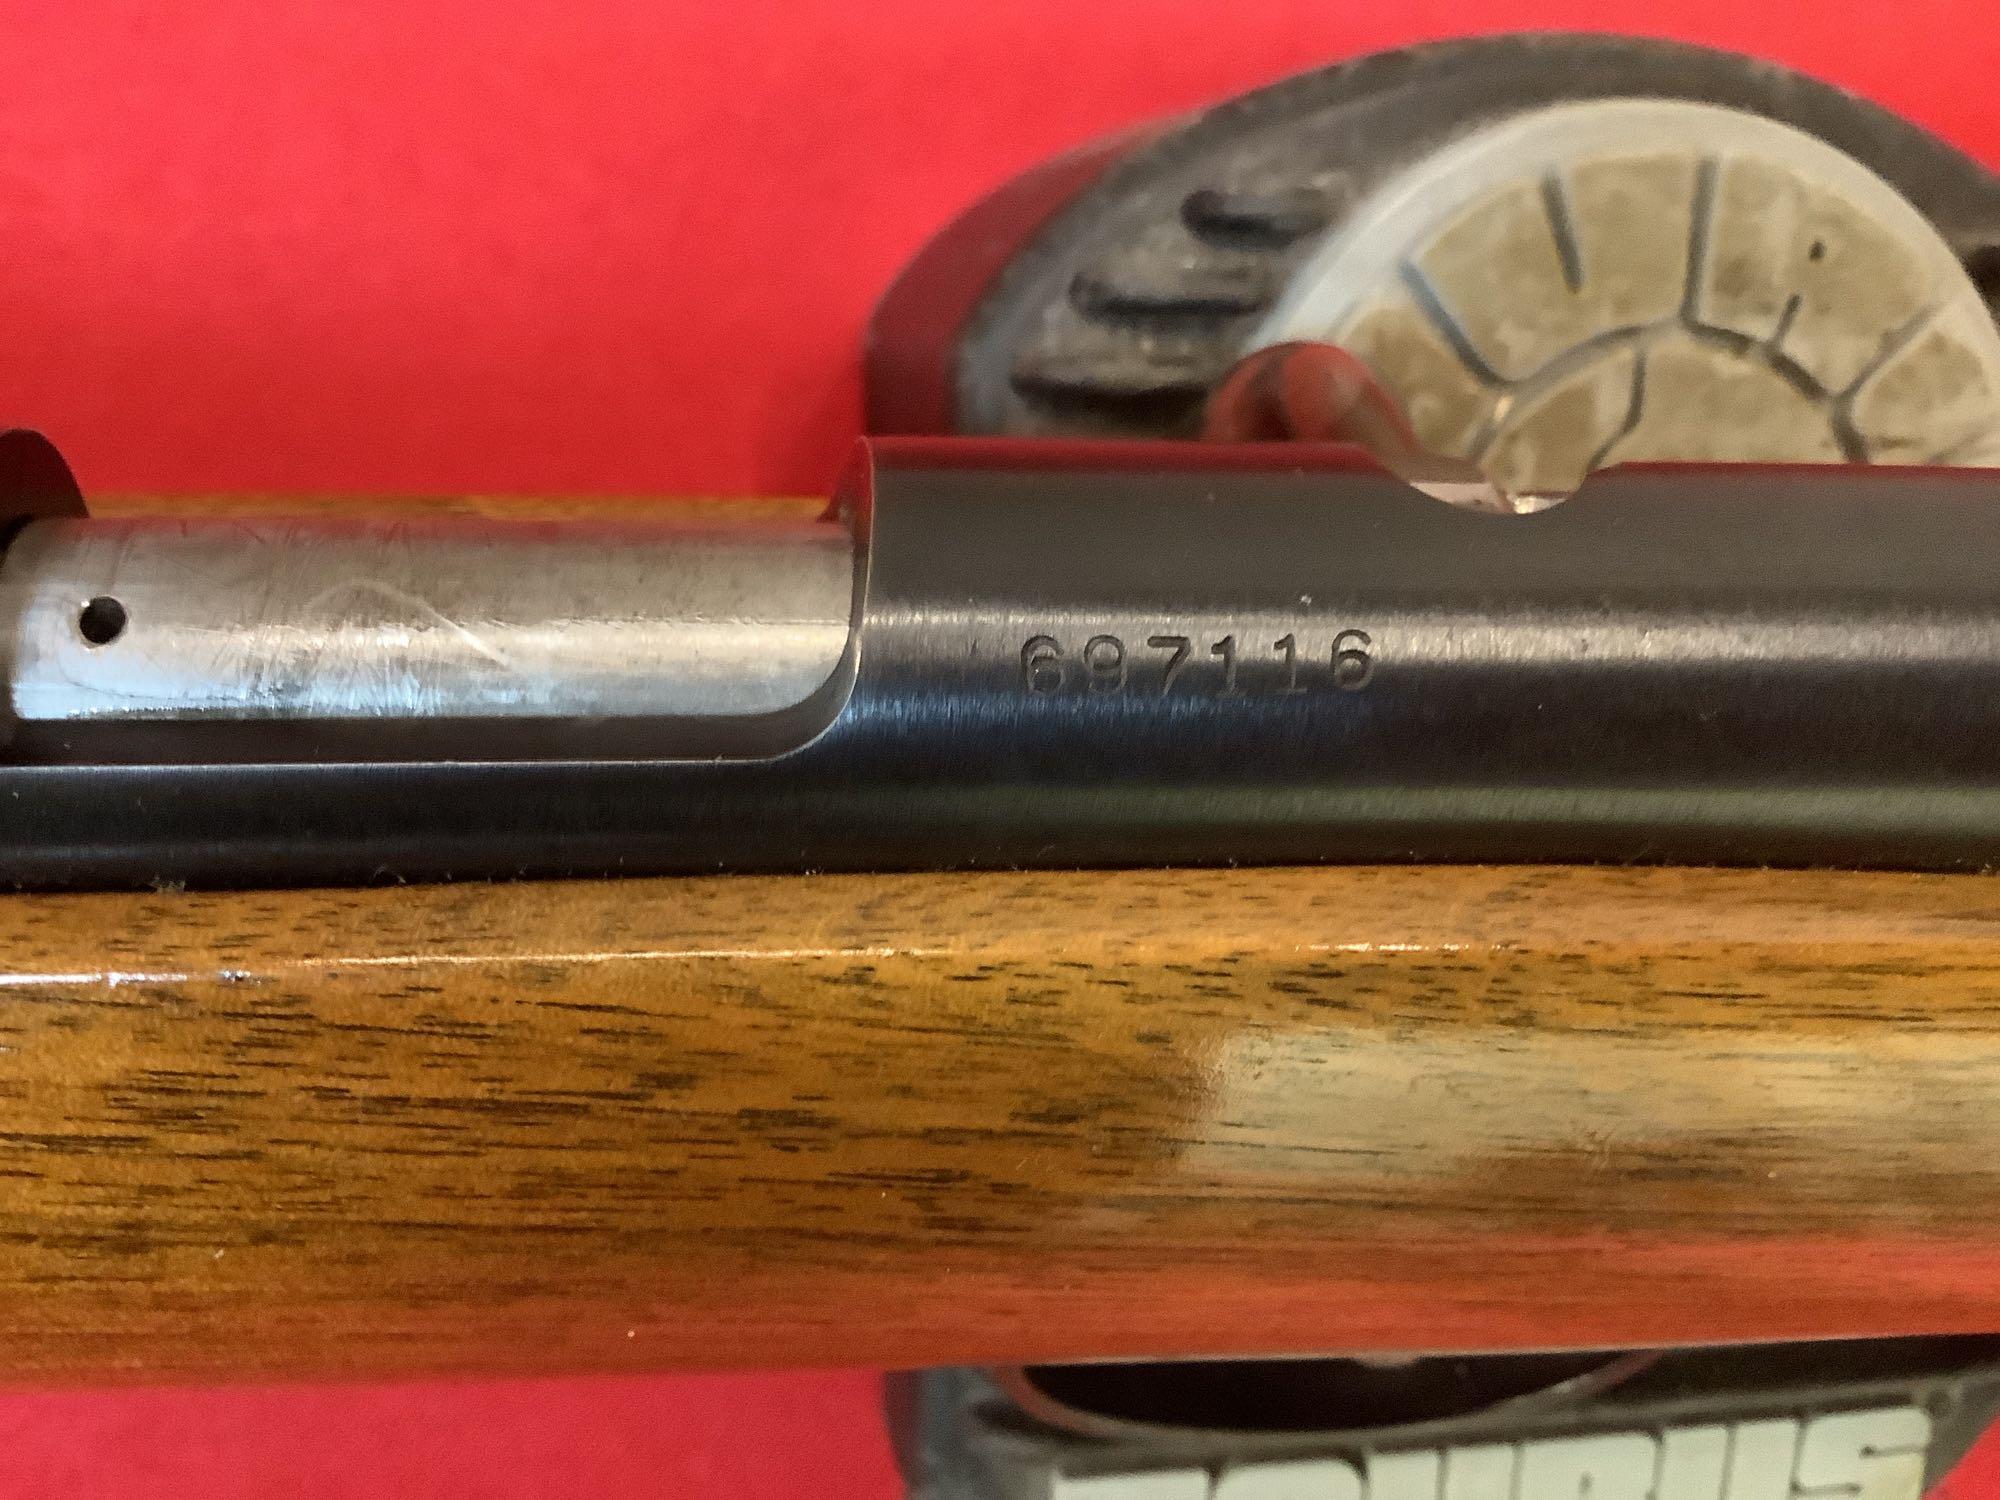 Remington mod. 514 Rifle